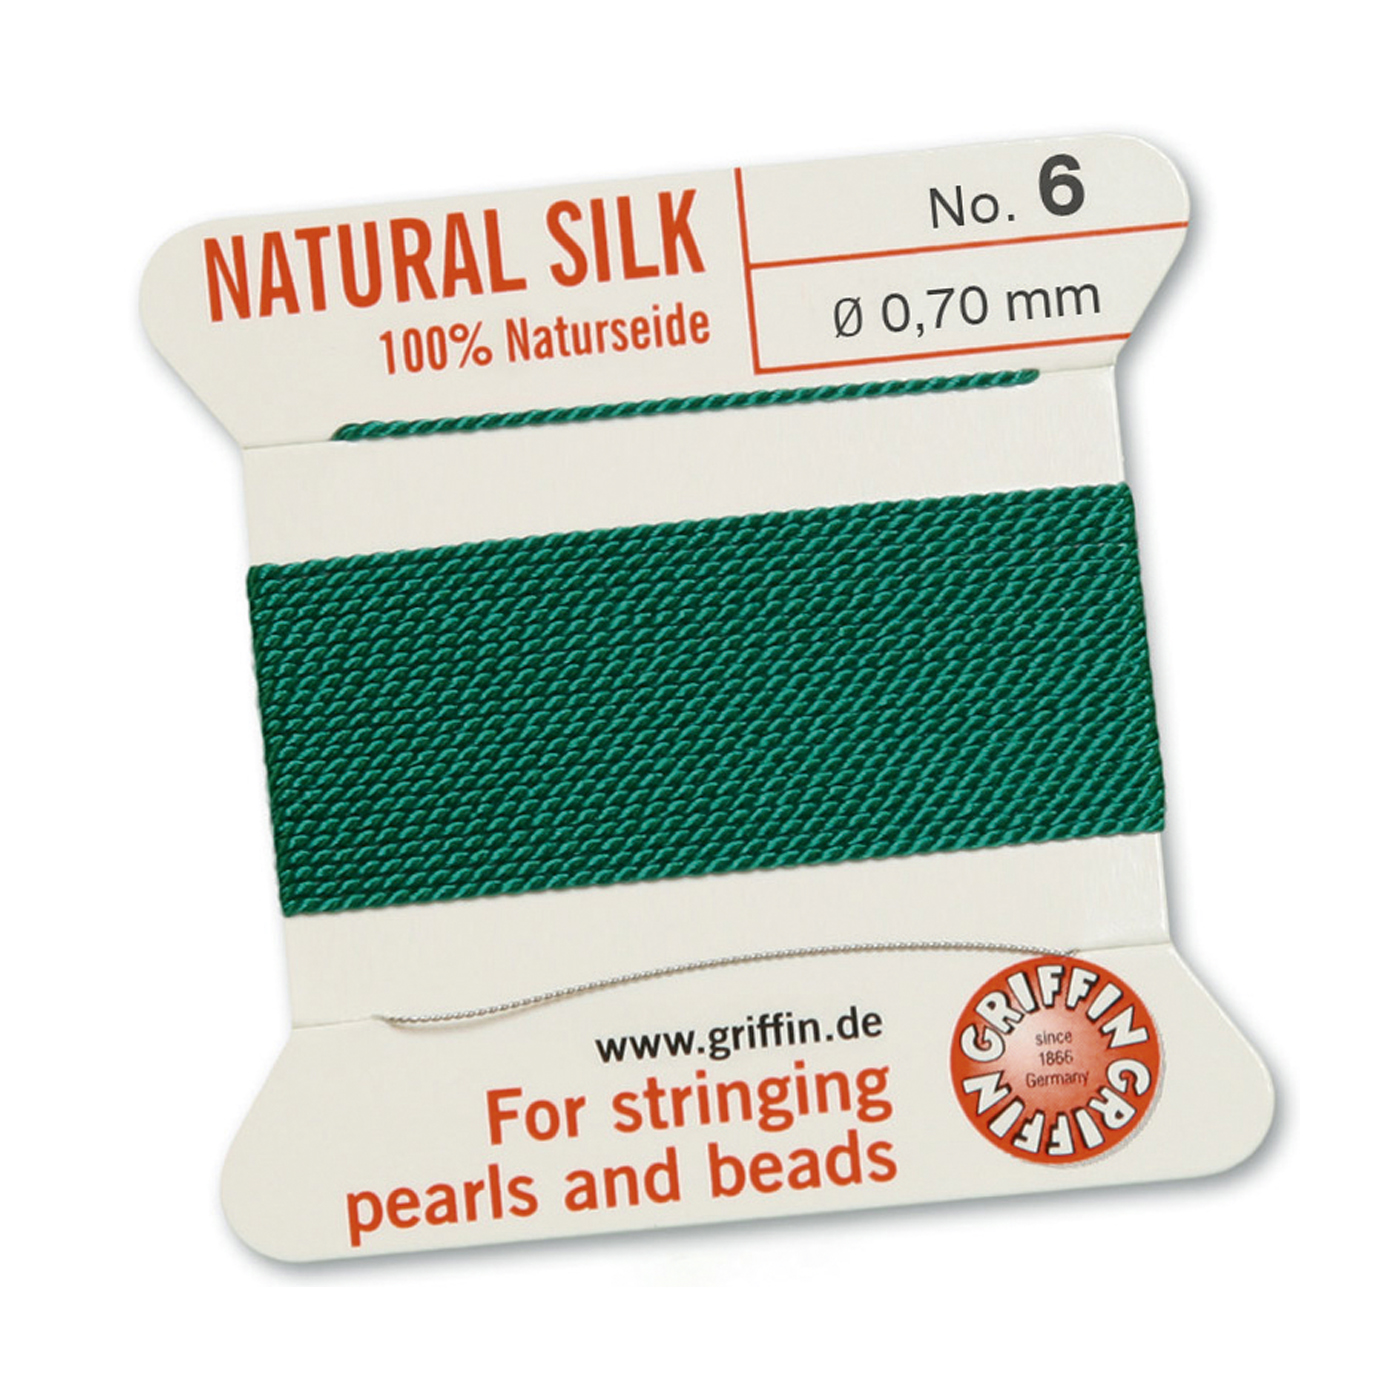 Bead Cord 100% Natural Silk, Green, No. 6 - 2 m